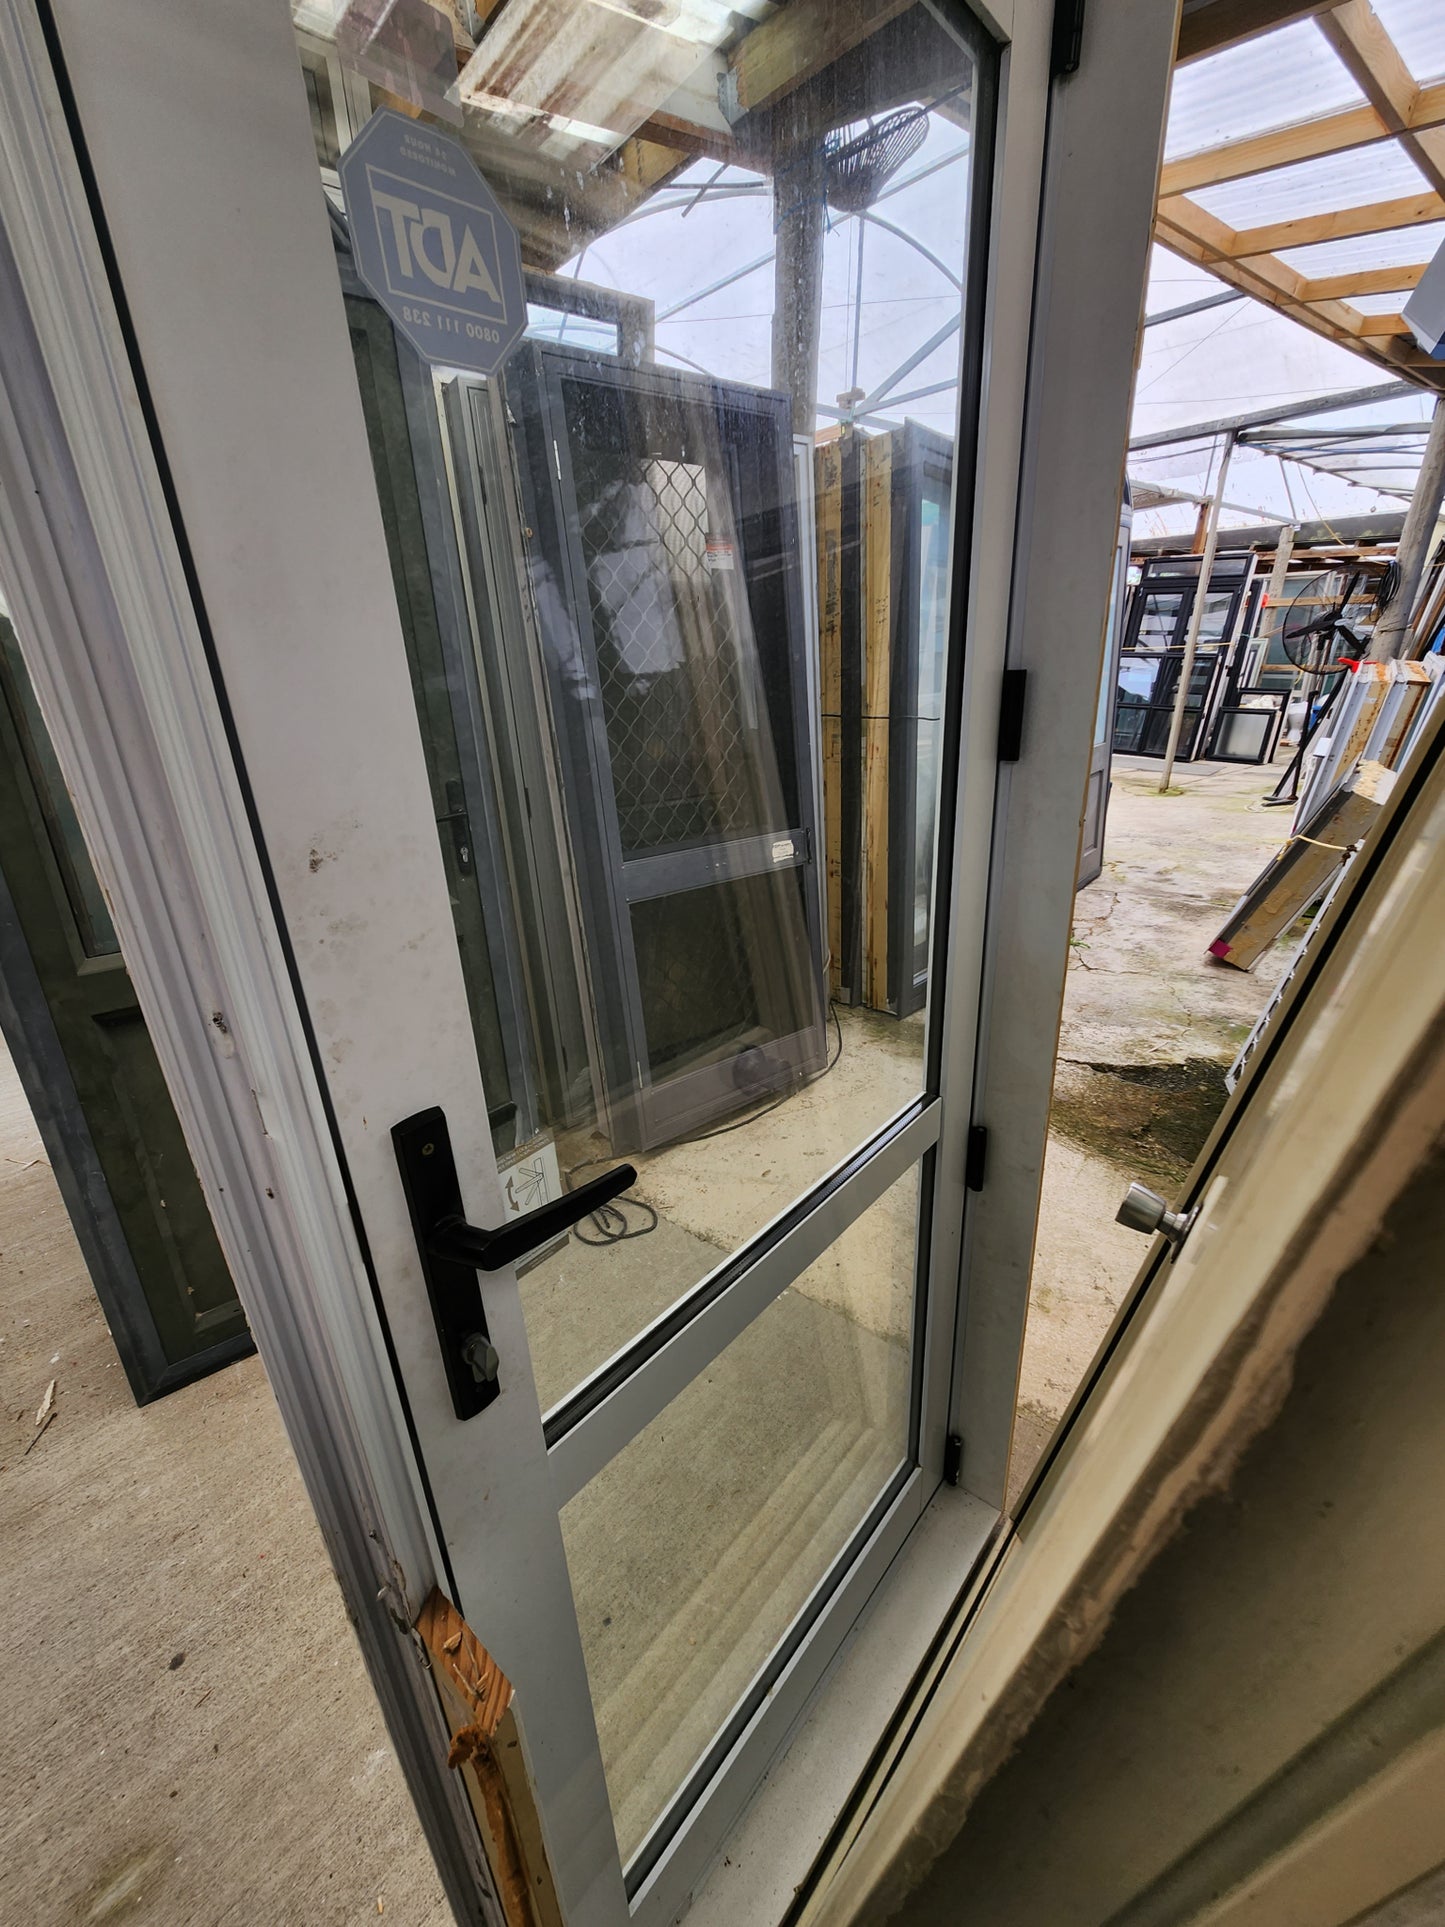 Double Glazed White Single Exterior Door 2000 H x 880 W #SDP2